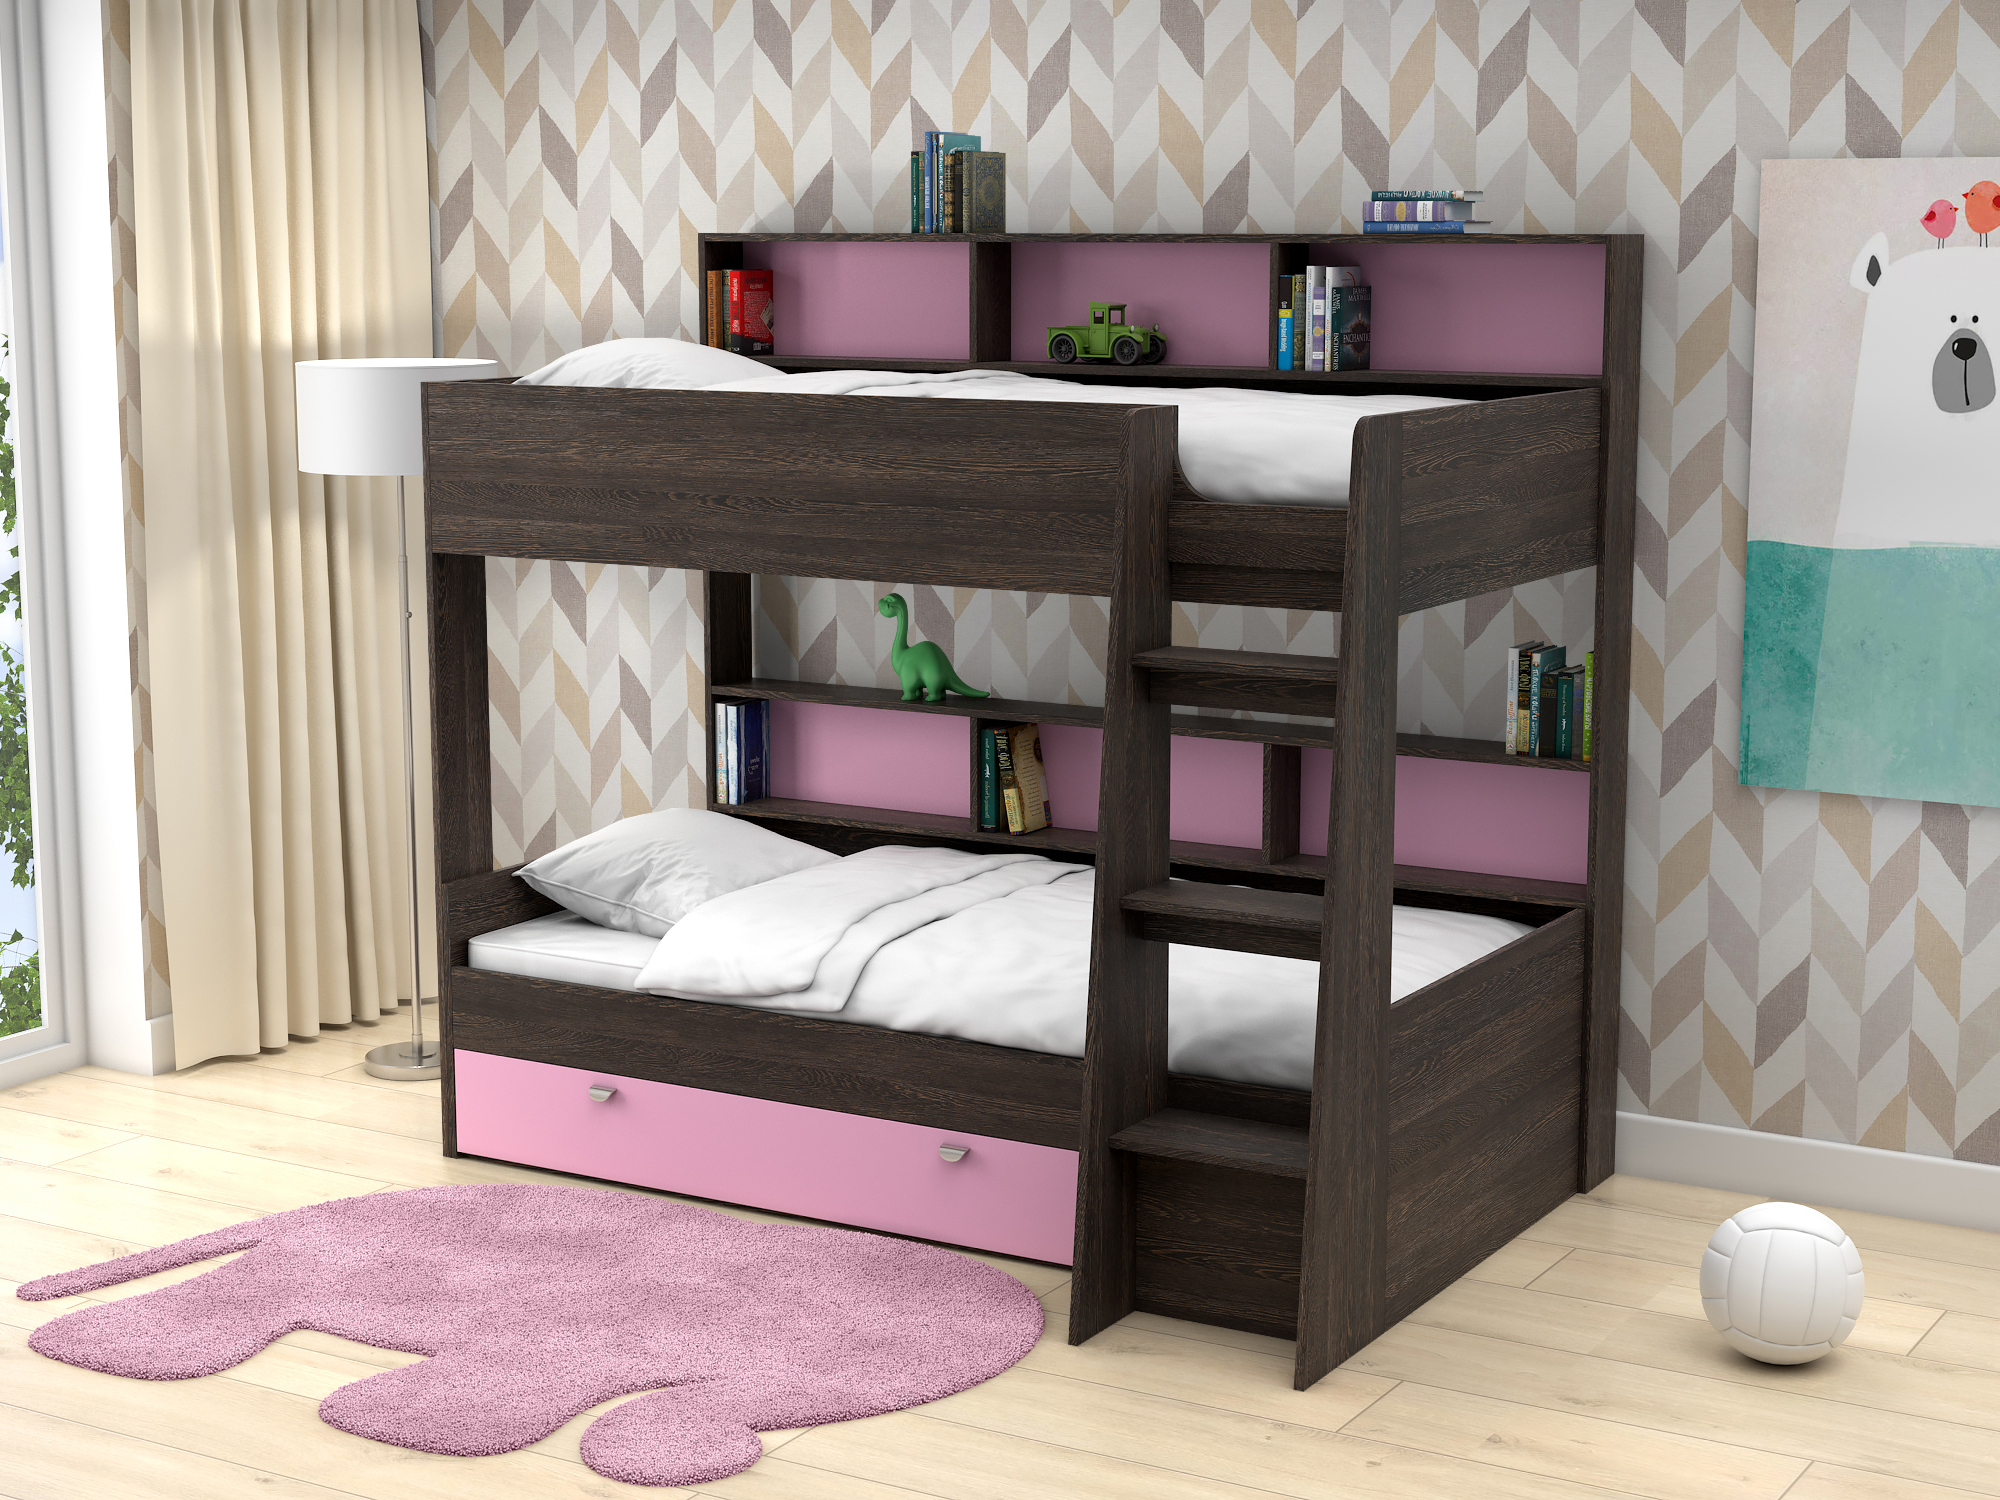 Двухъярусная кровать Golden Kids-1 (90х200) Розовый, Коричневый темный, ЛДСП